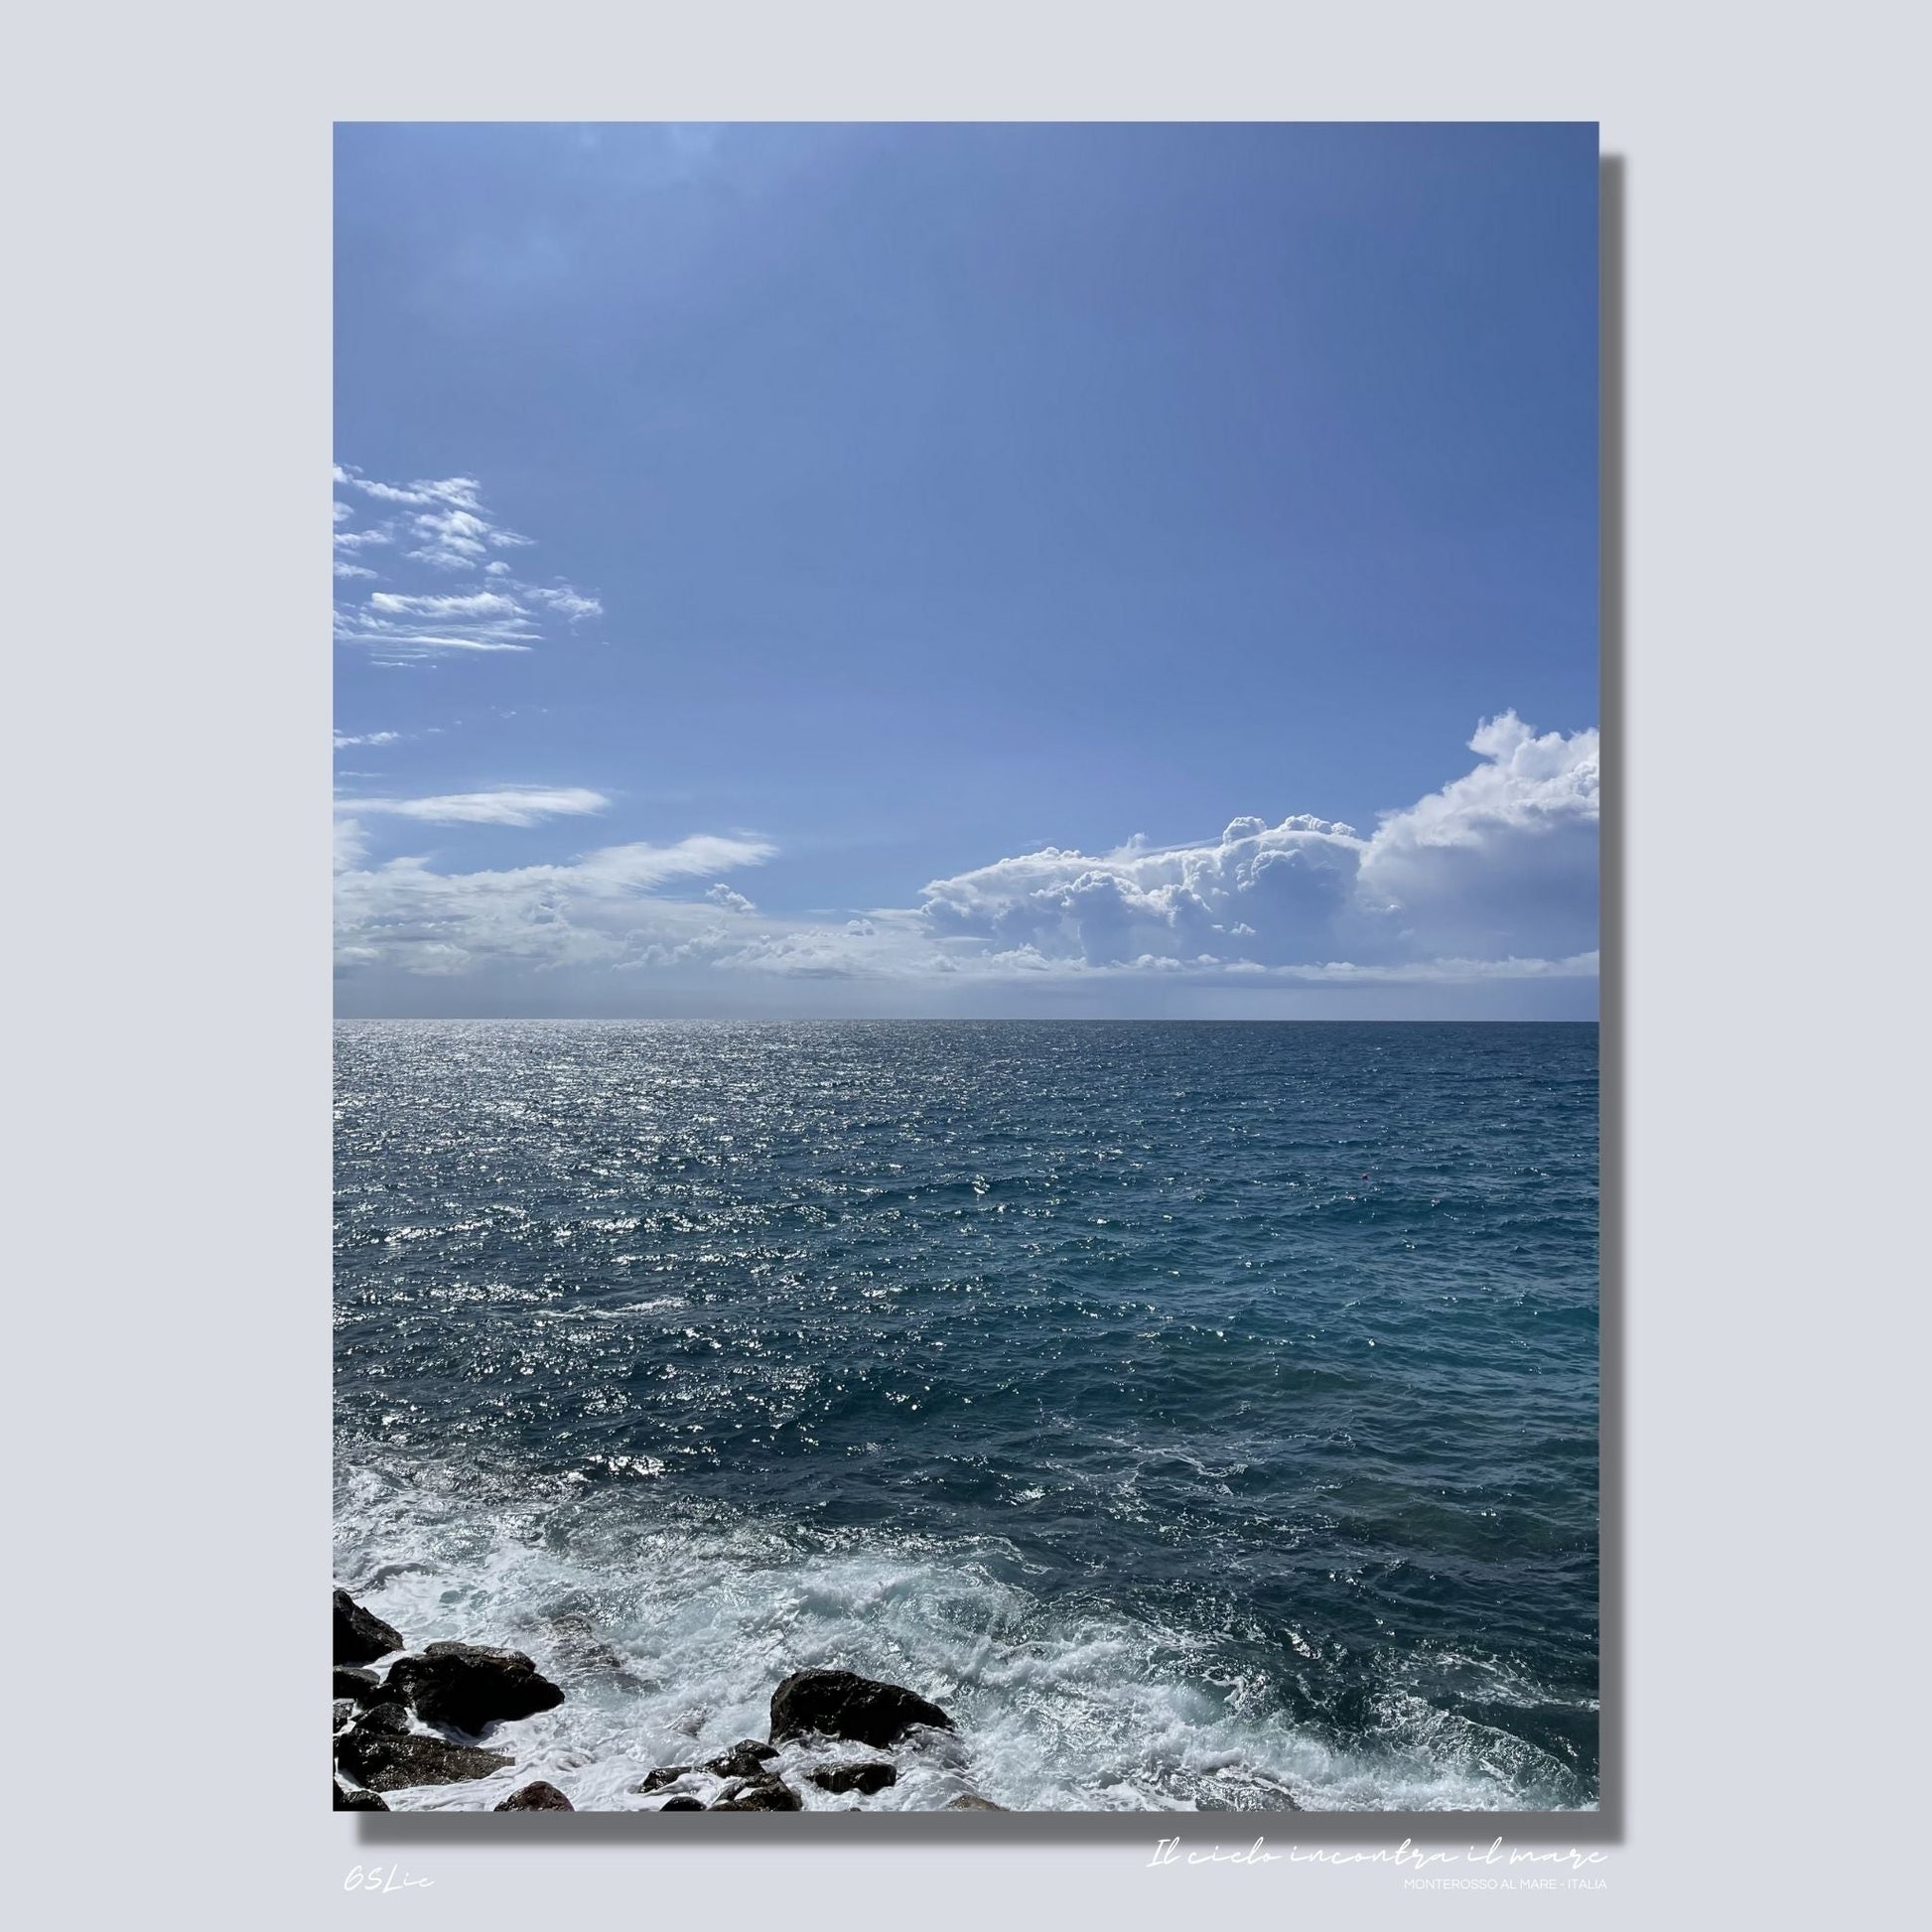 Motiv av Middelhavet ved Montereosso al Mare, en av de fem byene i Cinque Terre ved Liguriakysten i Italia. Bildet viser det blåe Middelhavet og himmel som møtes i horisonten. Dønninger fra havet skaper bølger ved land. Her er er bildet på lerretsduk. 